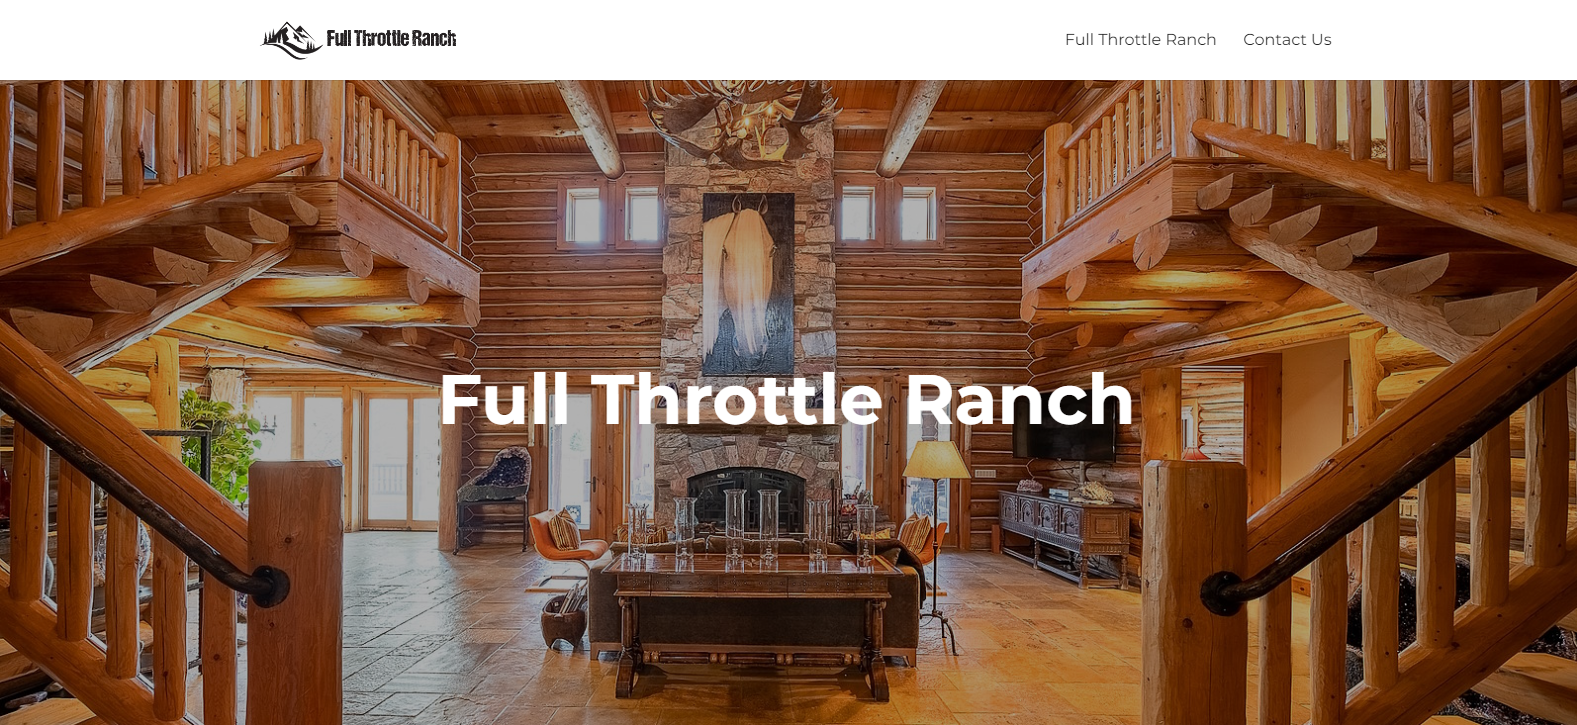 Full throttle ranch webpage